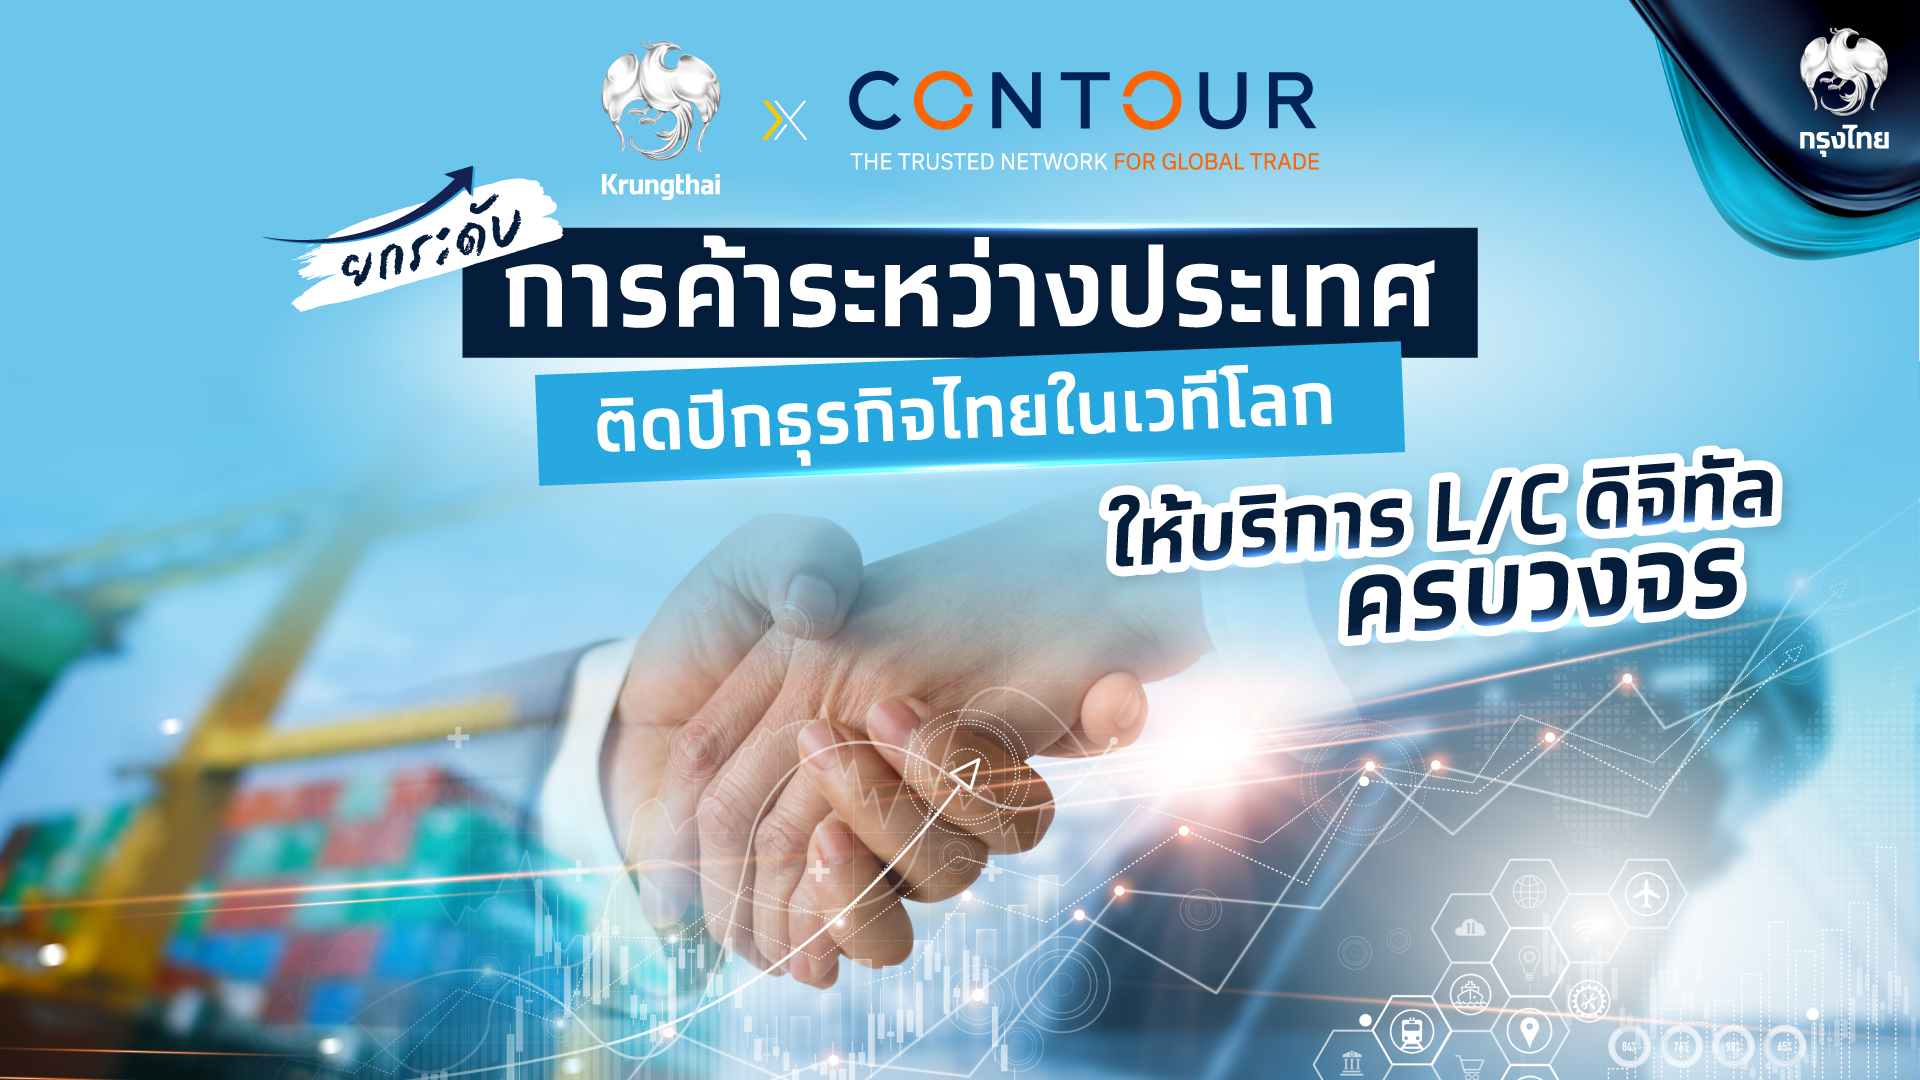 “กรุงไทย” จับมือ “Contour” ให้บริการ L/C ดิจิทัลครบวงจร ยกระดับการค้าระหว่างประเทศ ติดปีกธุรกิจไทยในเวทีโลก